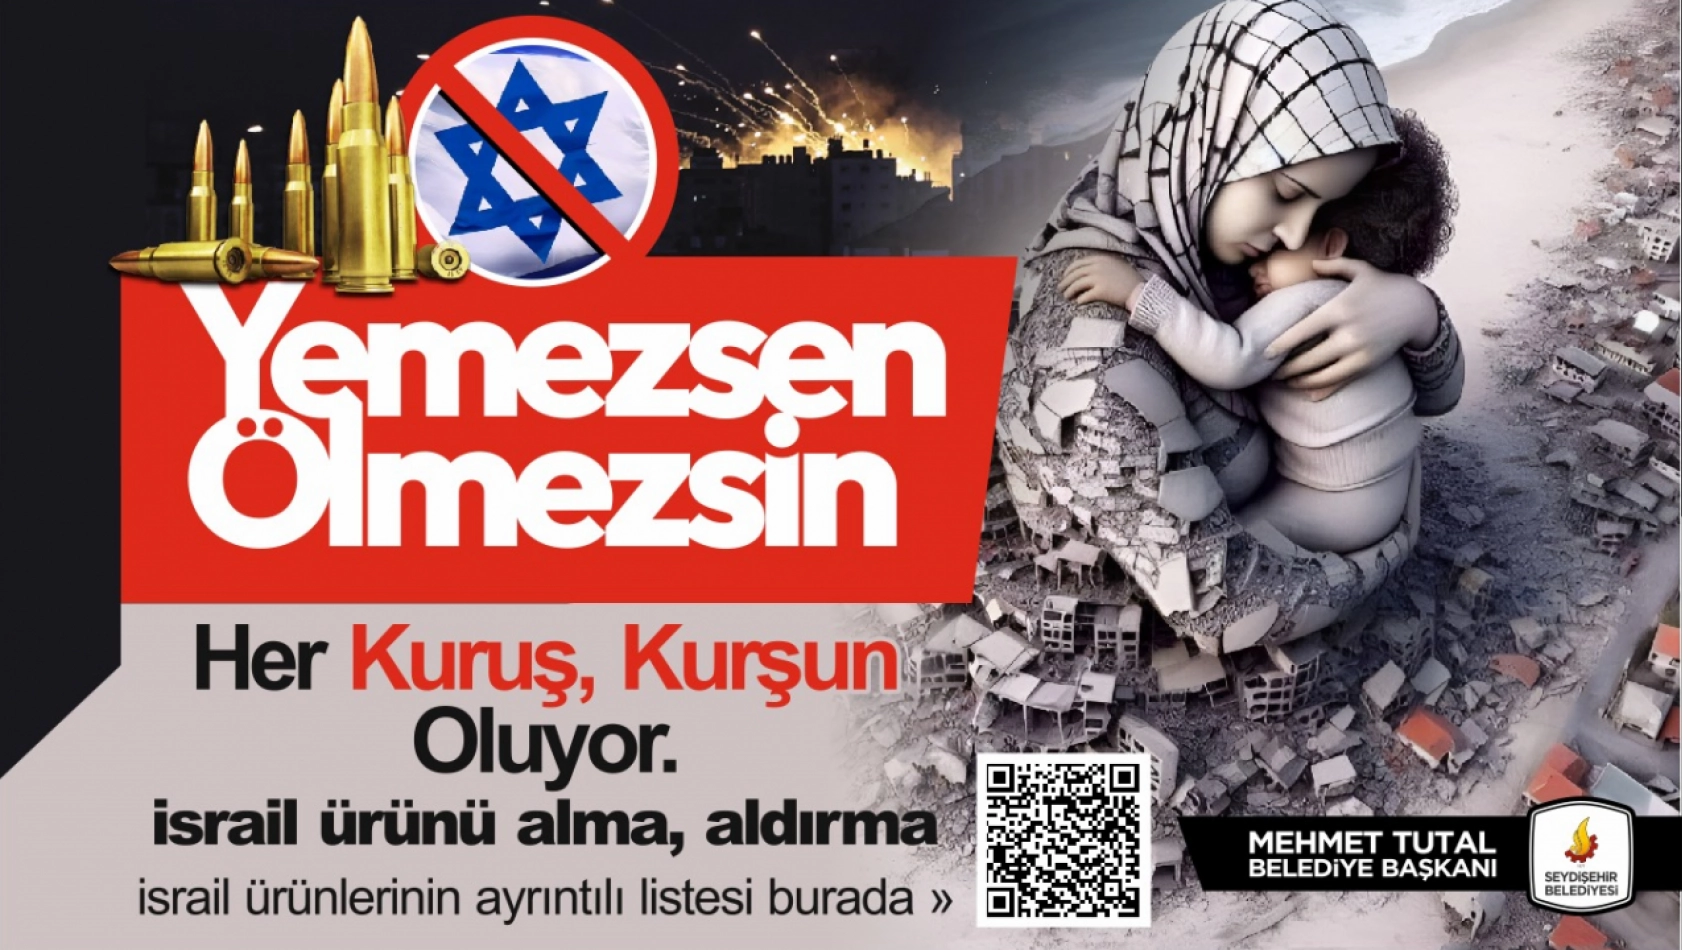 Konya'da bir belediye daha İsrail mallarına boykot kararı aldı